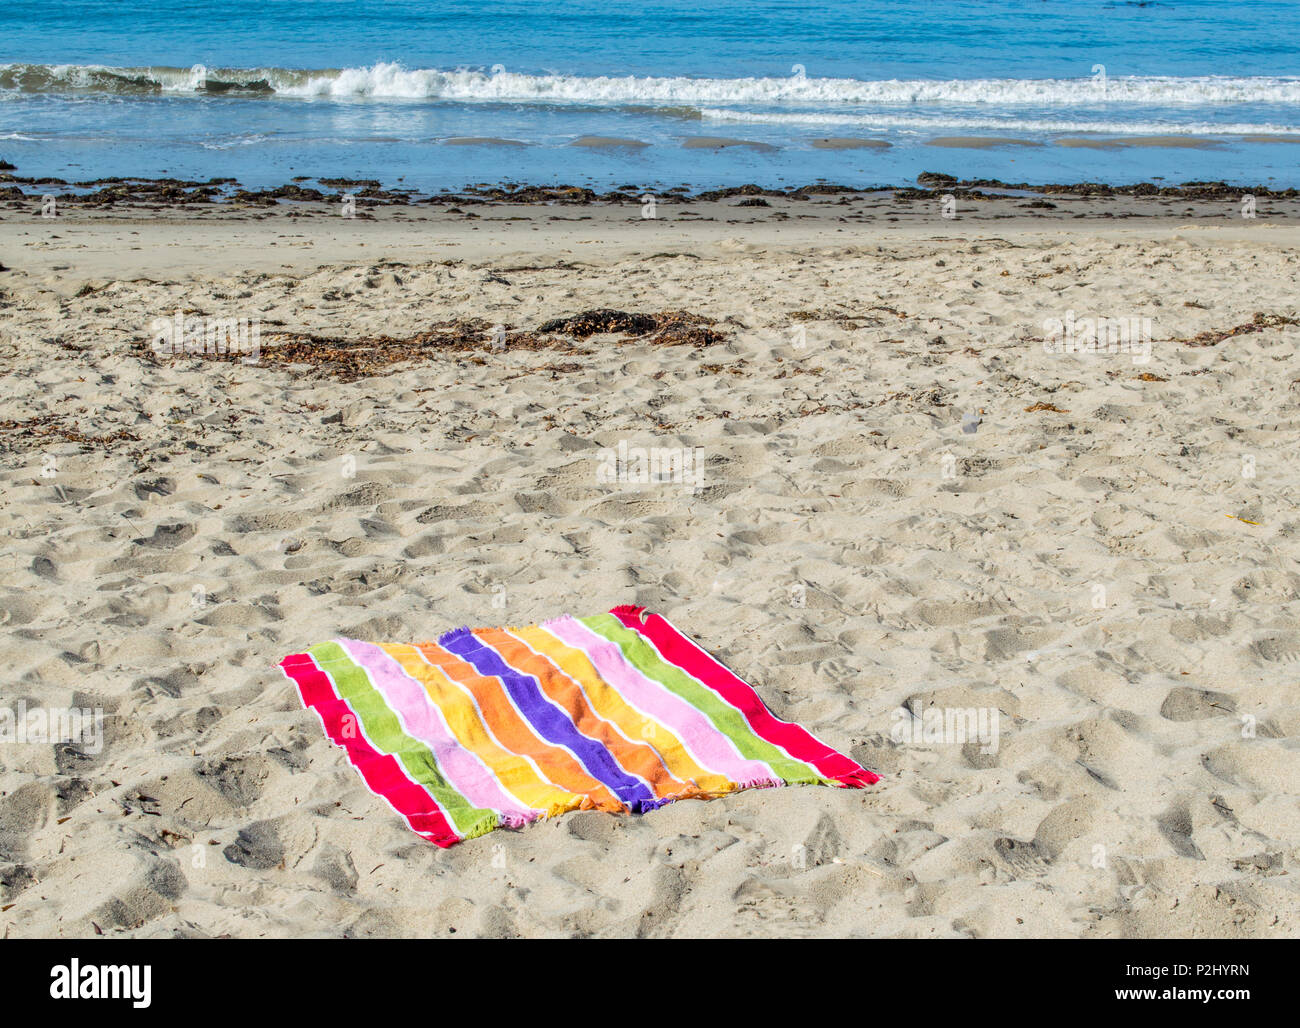 A strisce colorate telo da spiaggia su una spiaggia deserta con il mare in lontananza su una soleggiata giornata estiva Foto Stock